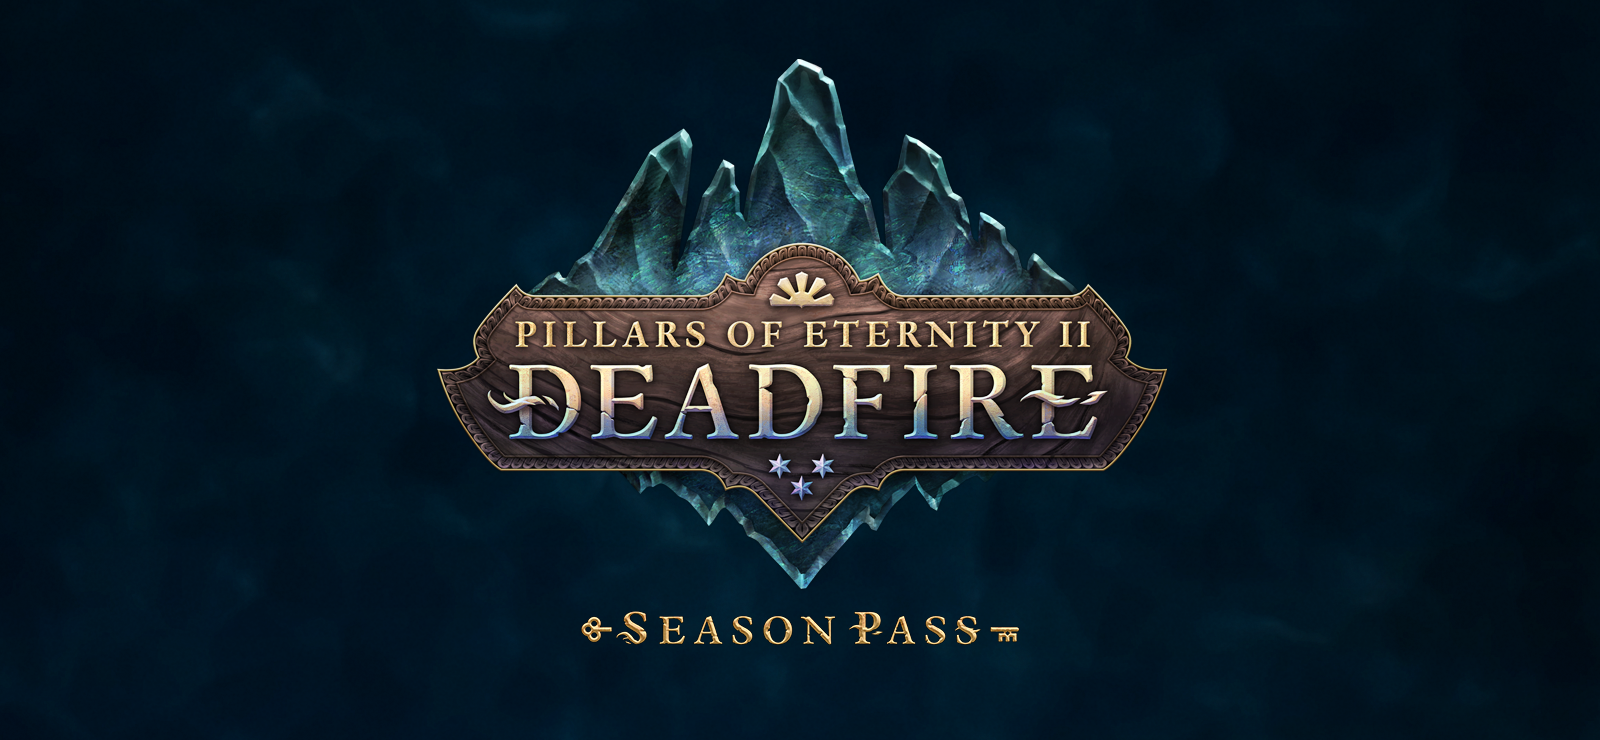 Pillars Of Eternity II: Deadfire - Season Pass